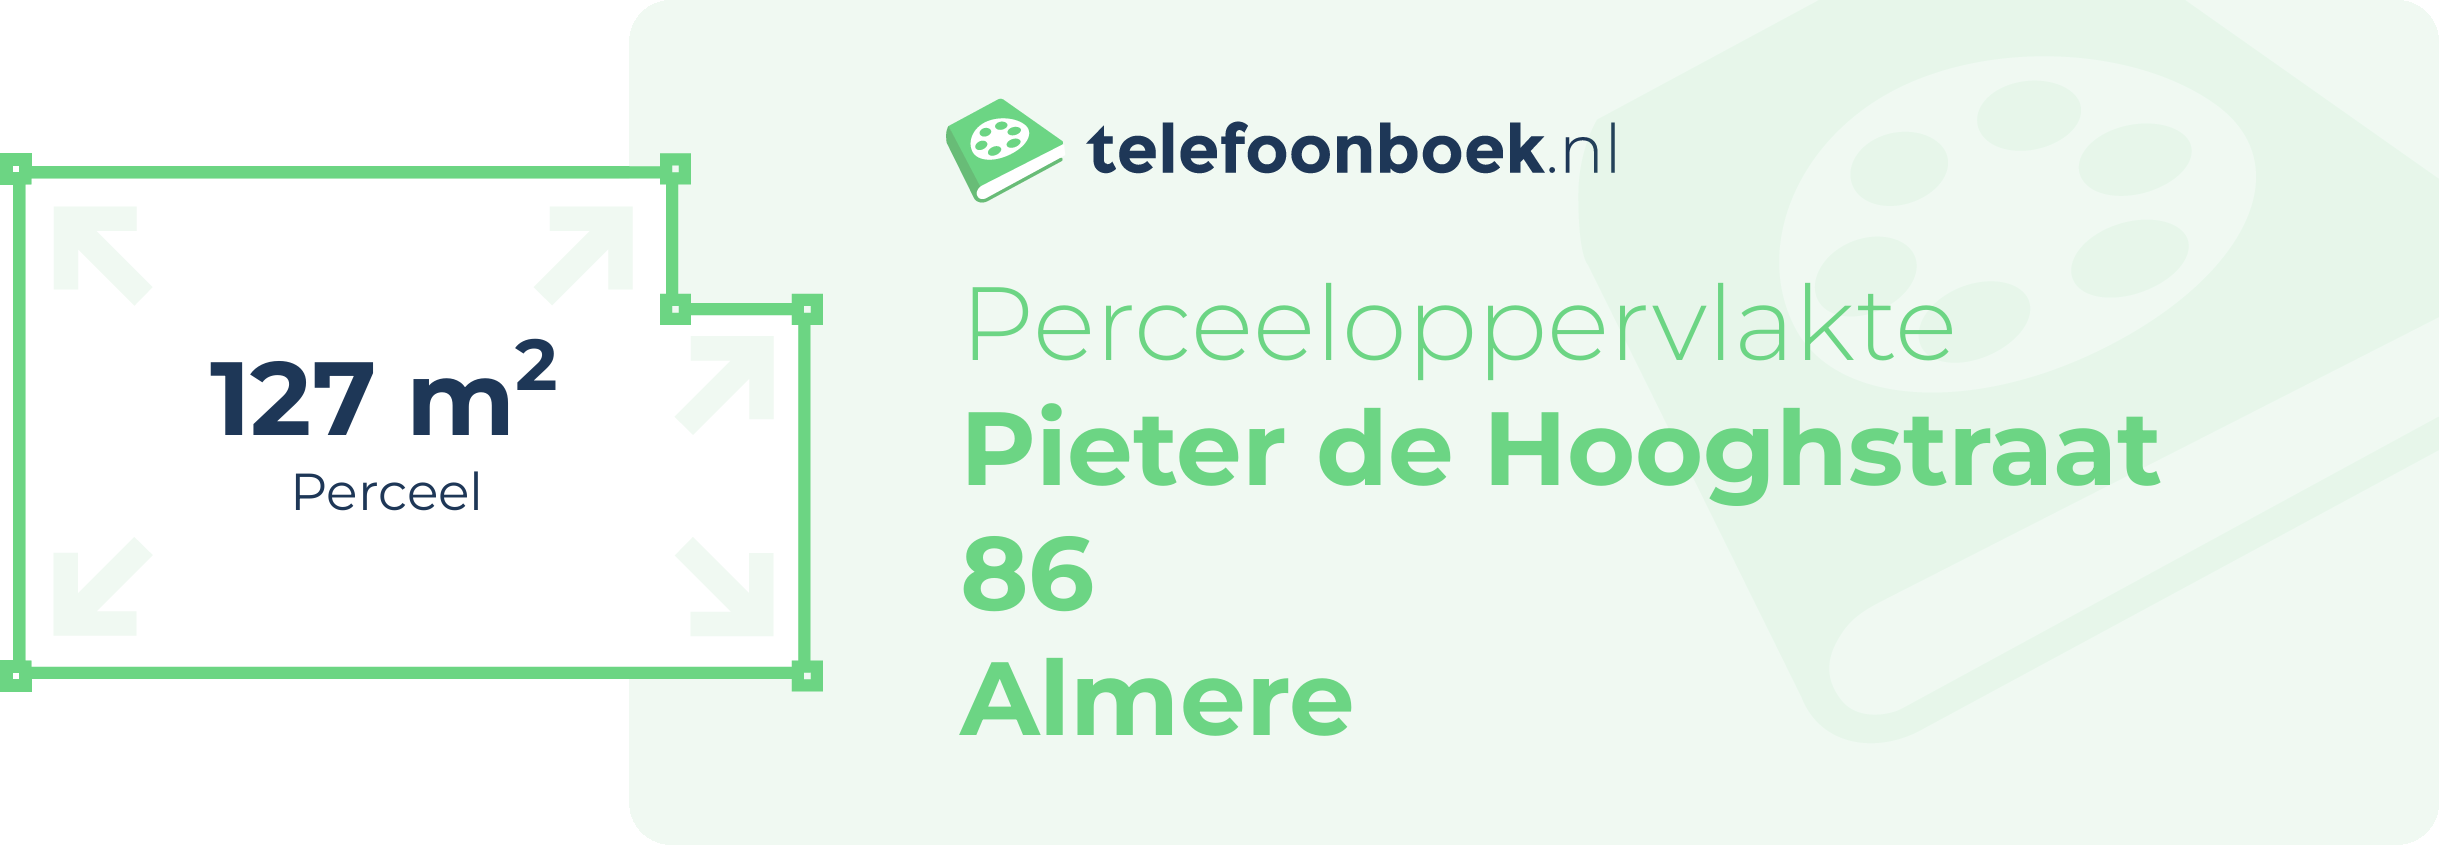 Perceeloppervlakte Pieter De Hooghstraat 86 Almere